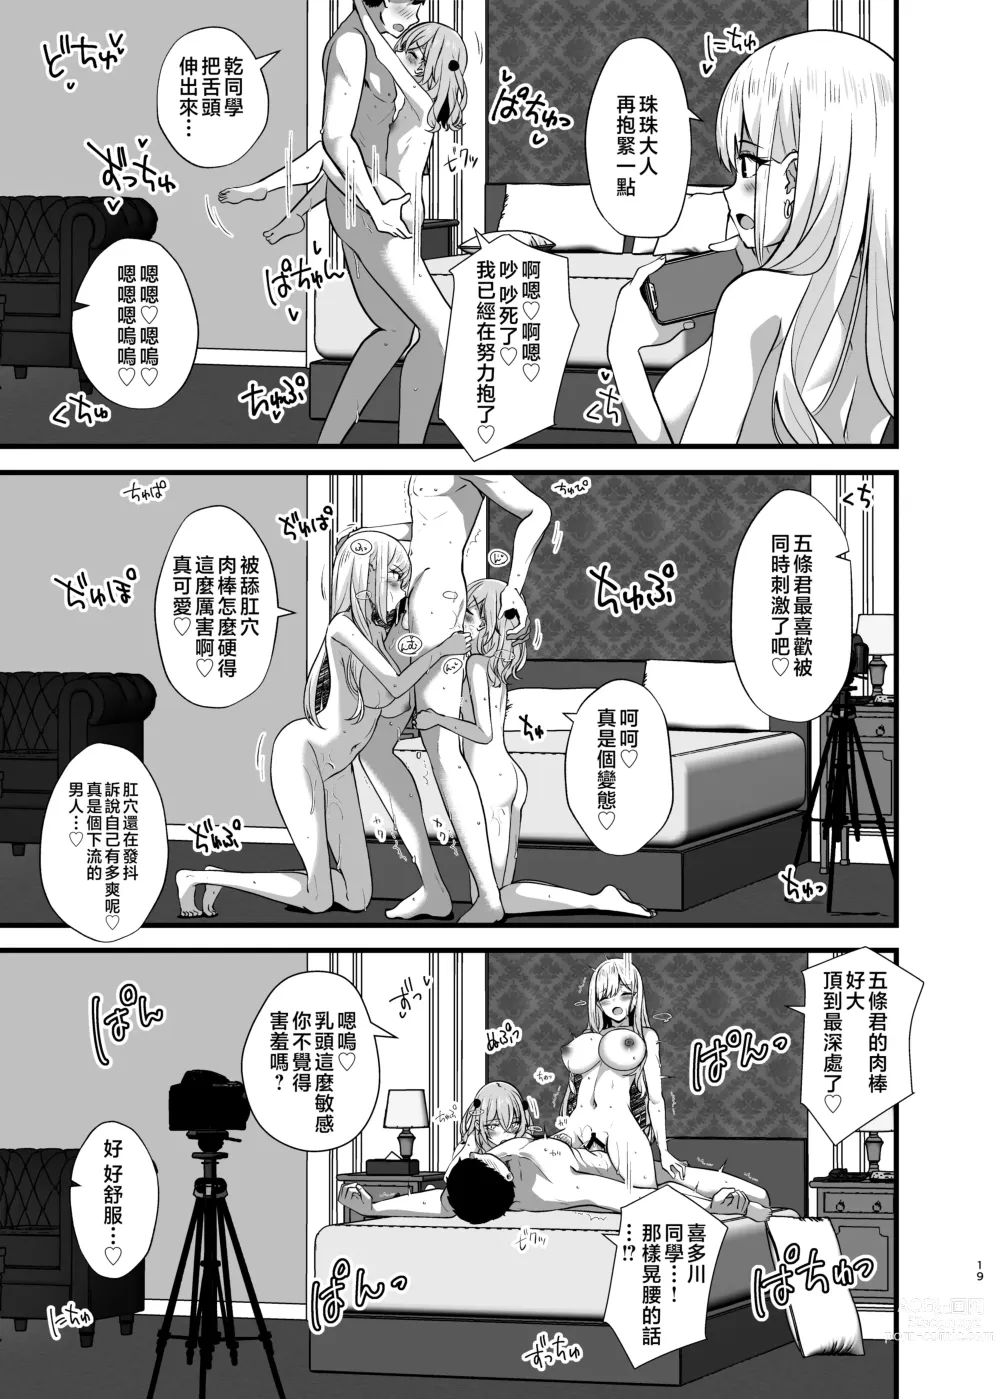 Page 19 of doujinshi Hokomi 0 Yen Kosu Pako Satsueikai.mp4